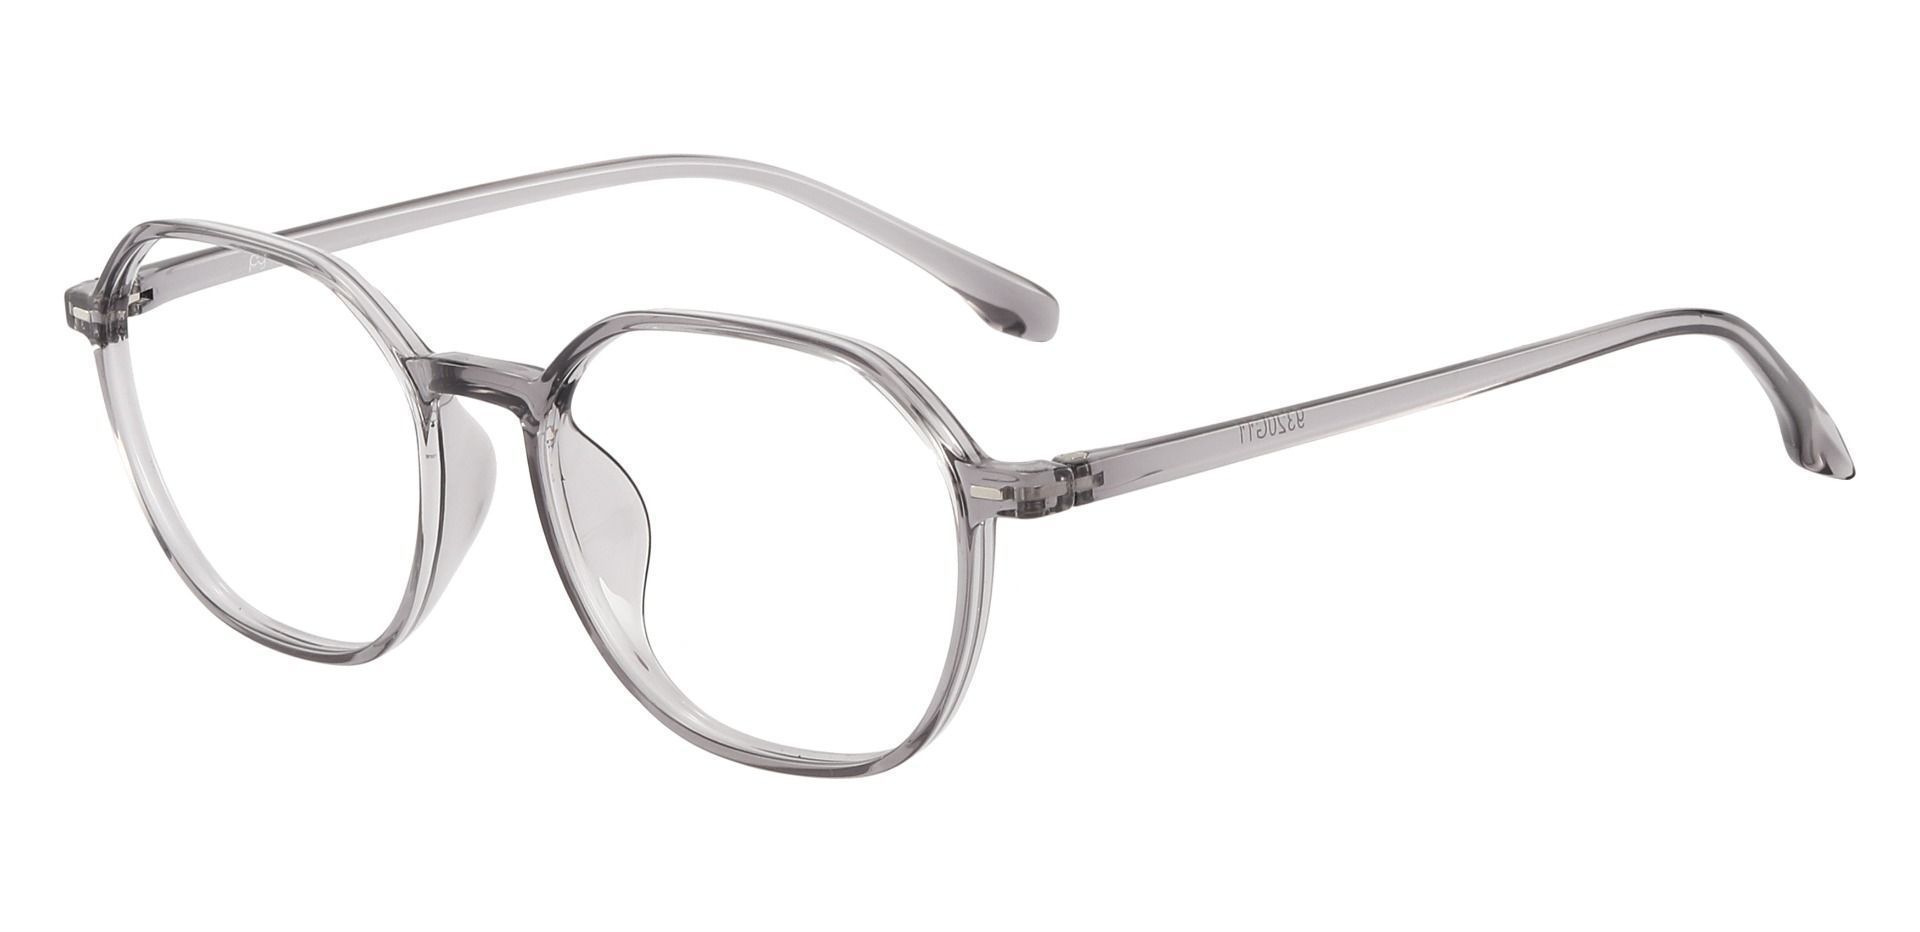 Detroit Geometric Eyeglasses Frame - Gray